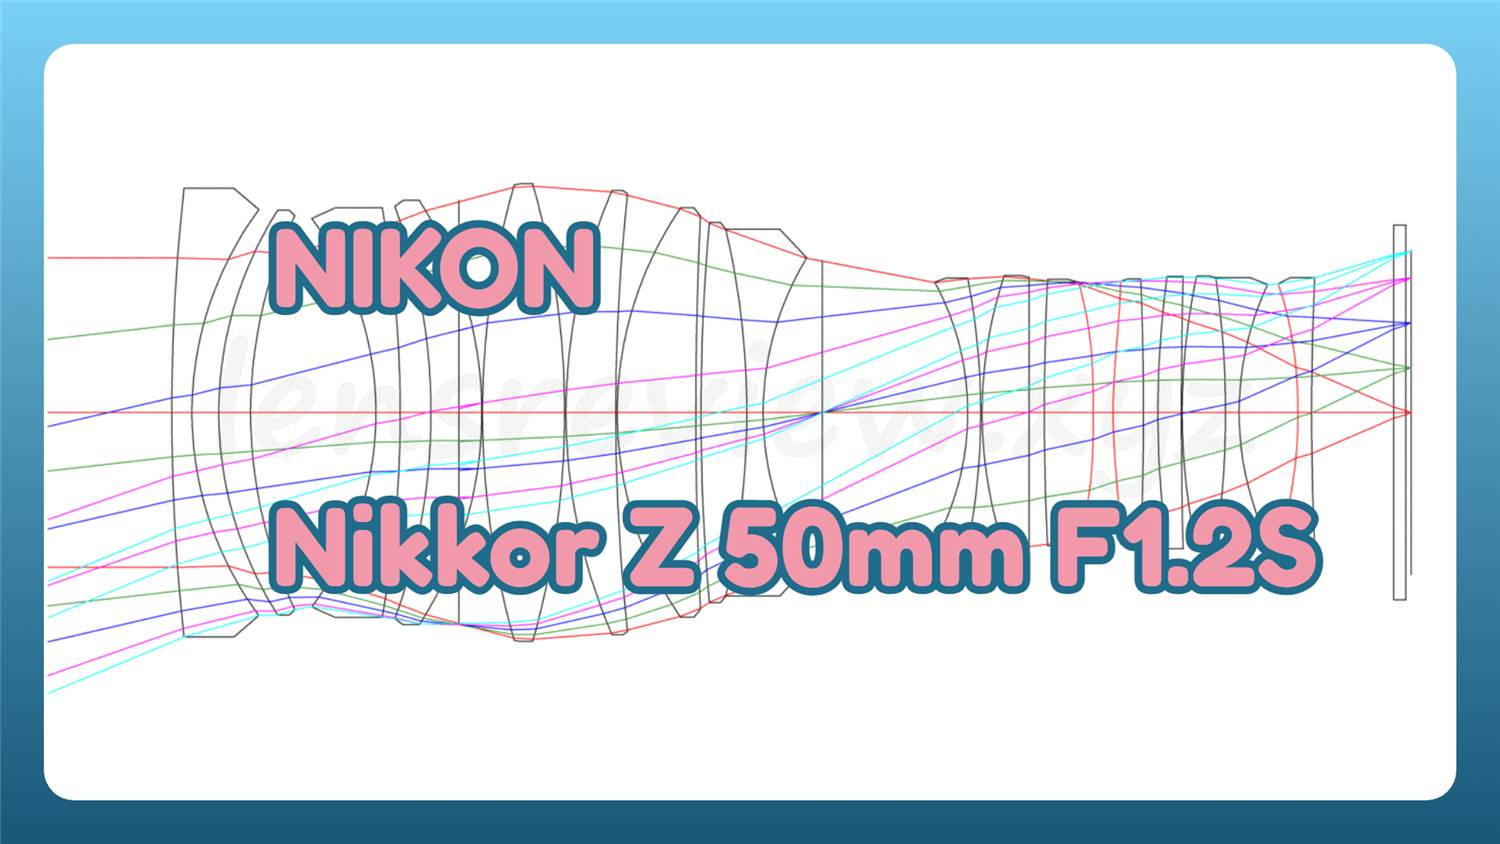 レンズ性能評価】NIKON Nikkor Z 50mm F1.2S -分析079 - LENS Review